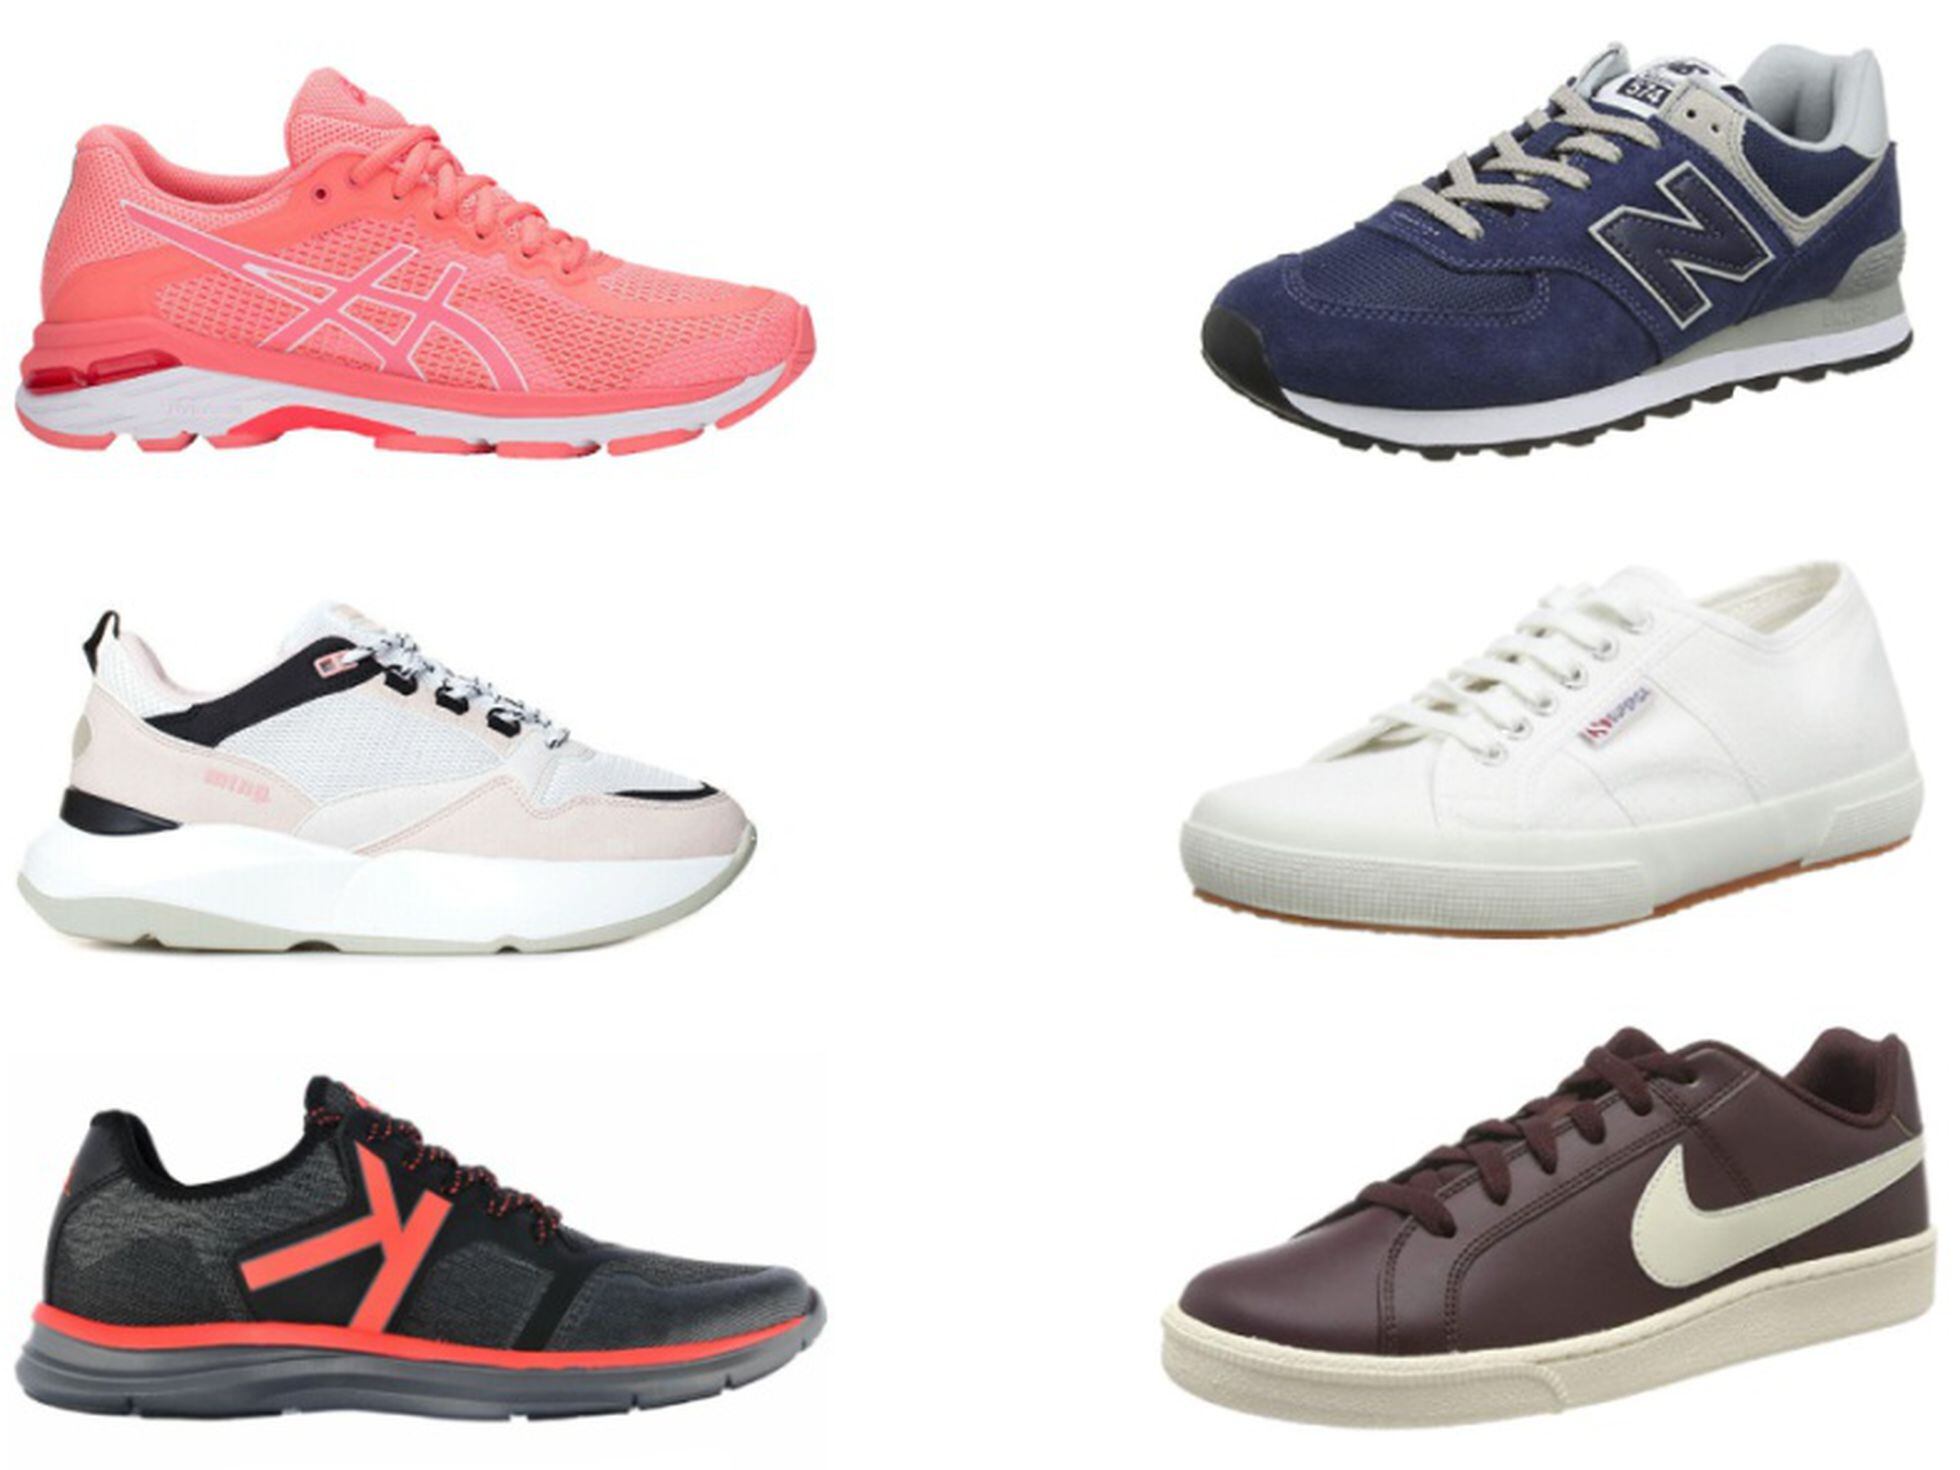 Discrepancia China hacha Nike, Adidas, Puma o Superga: 15 modelos de zapatillas de marca en rebajas  | Escaparate | EL PAÍS